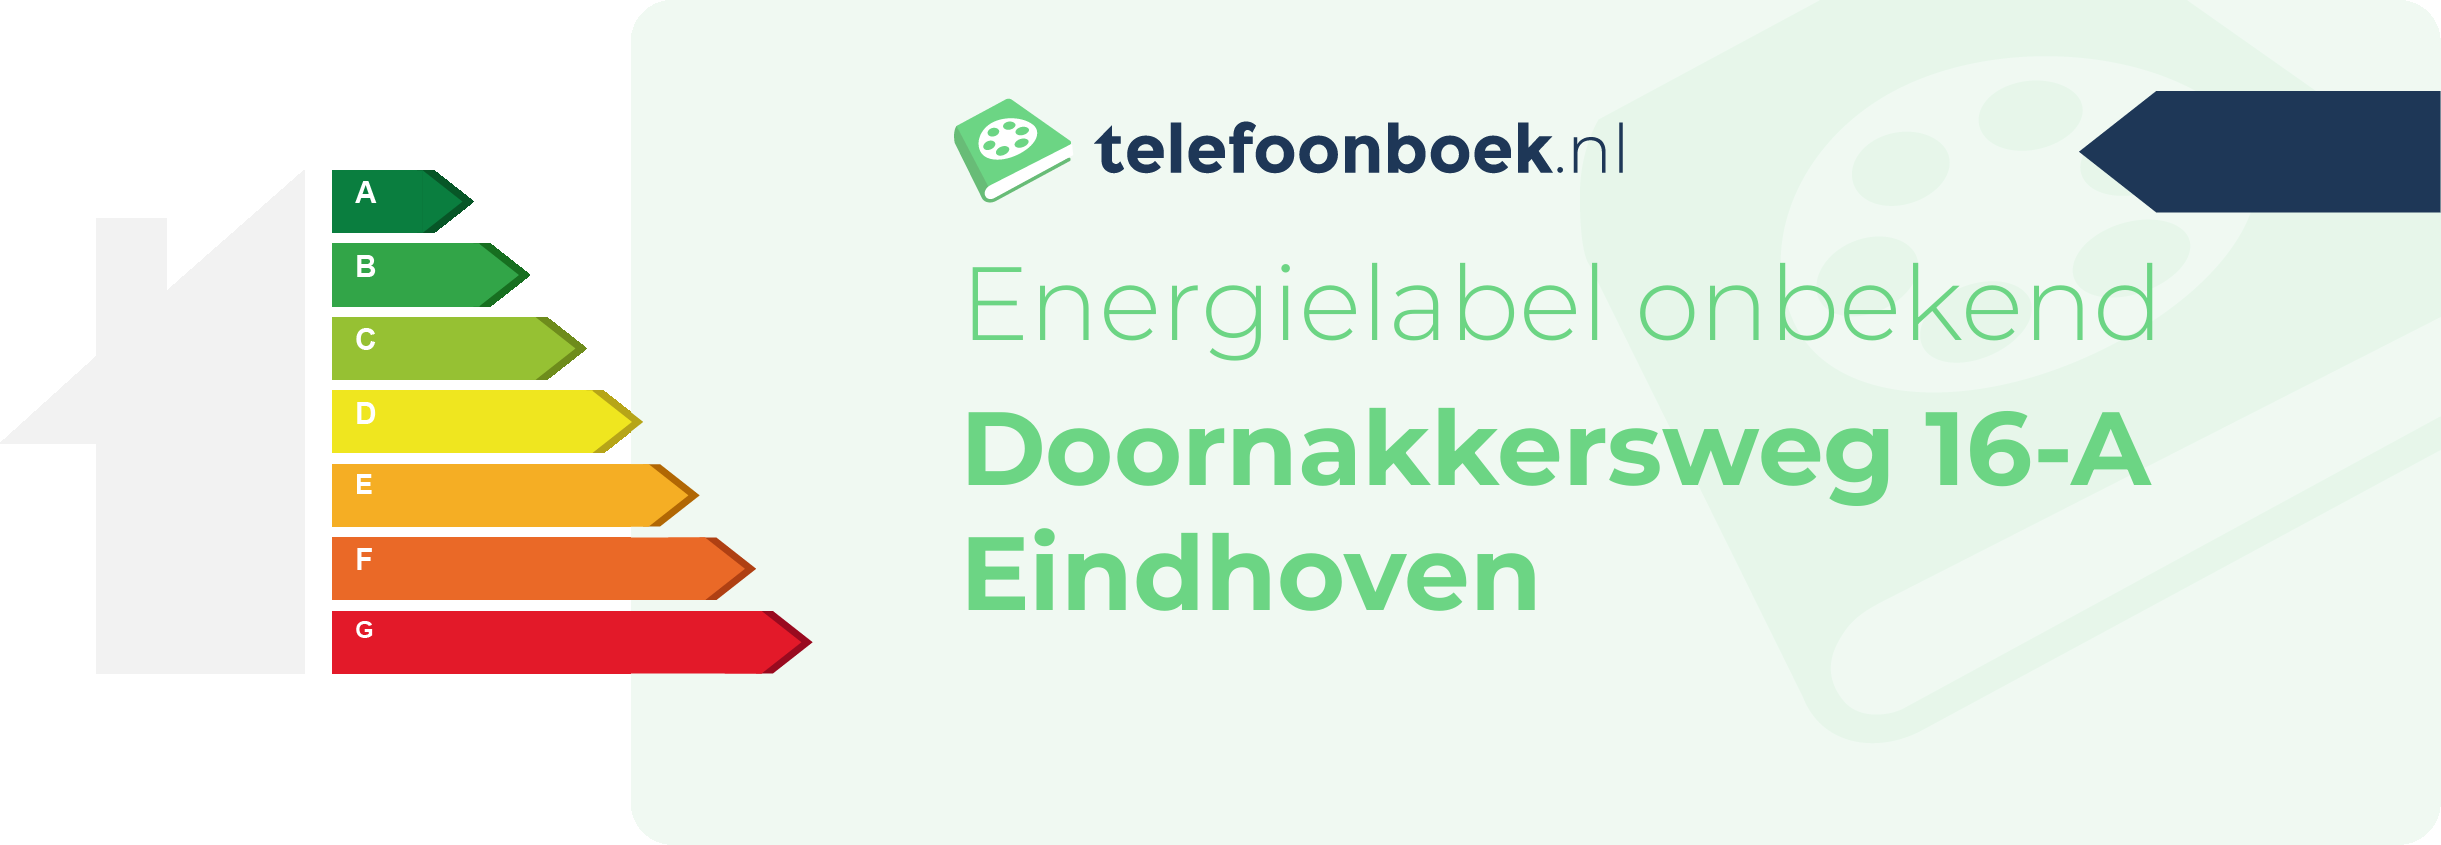 Energielabel Doornakkersweg 16-A Eindhoven